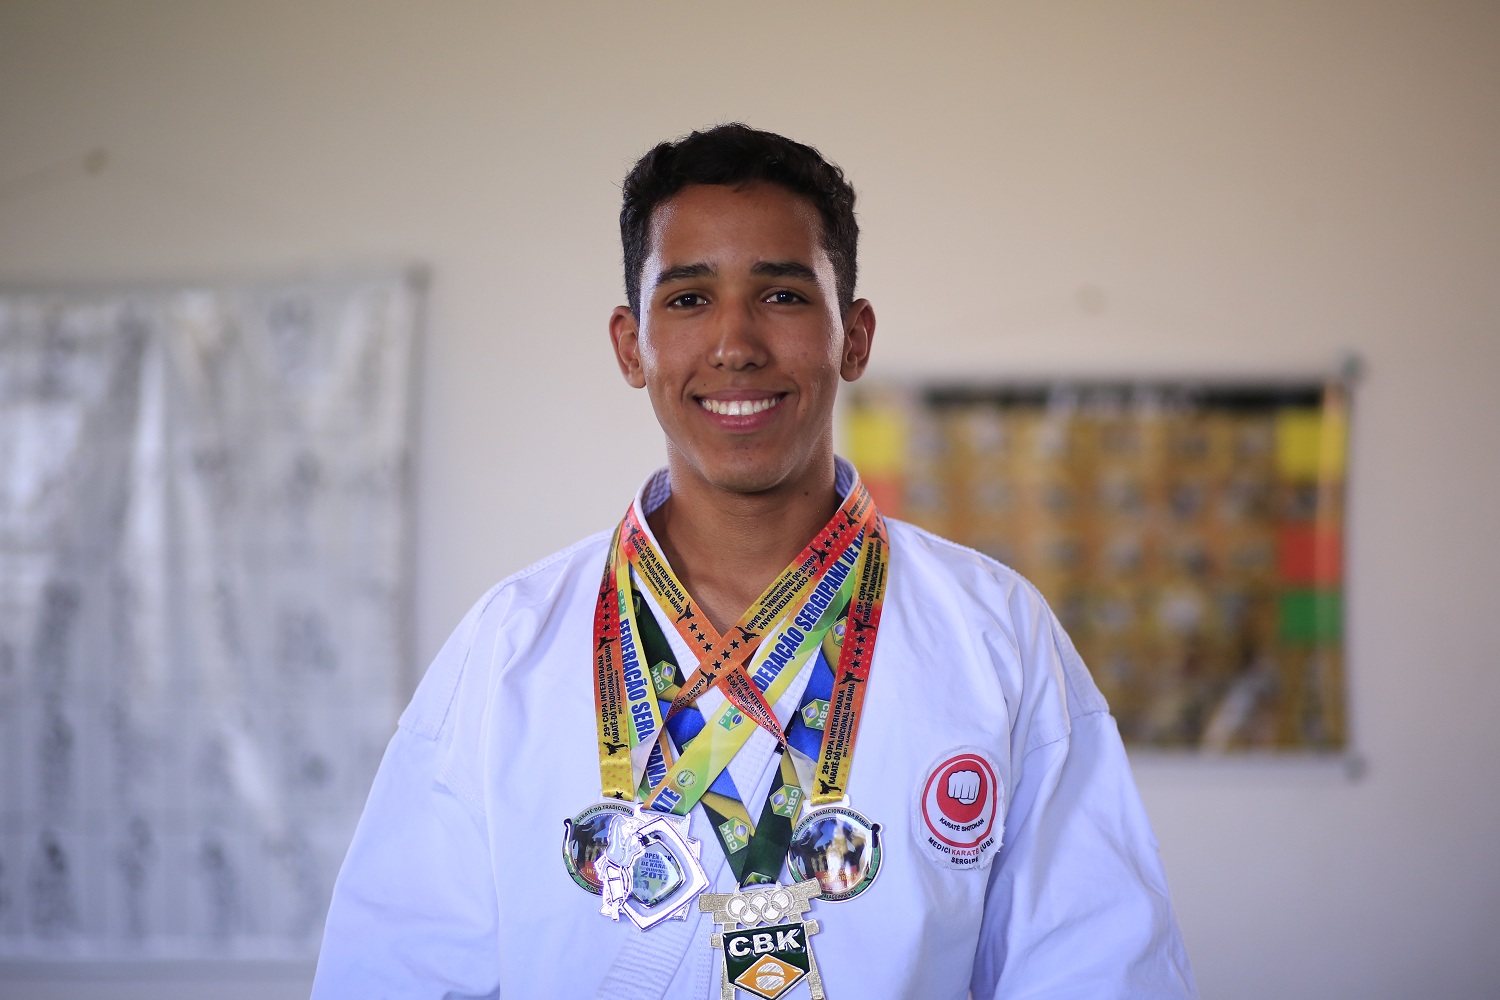 Já Albert Macedo ficou com o bronze no Campeonato Brasileiro Universitário de Karatê.